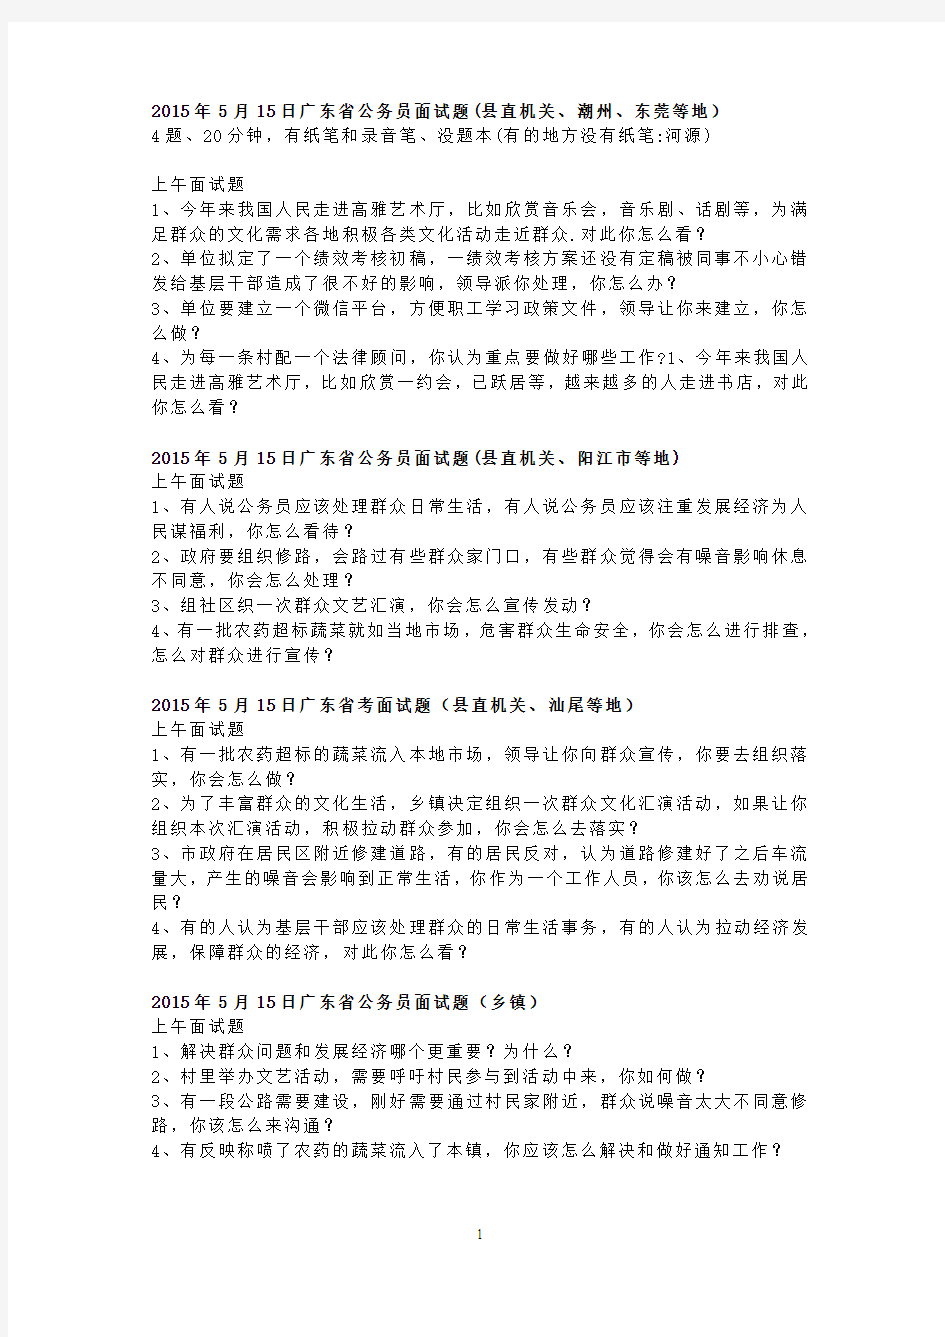 2015年广东省公务员考试面试真题